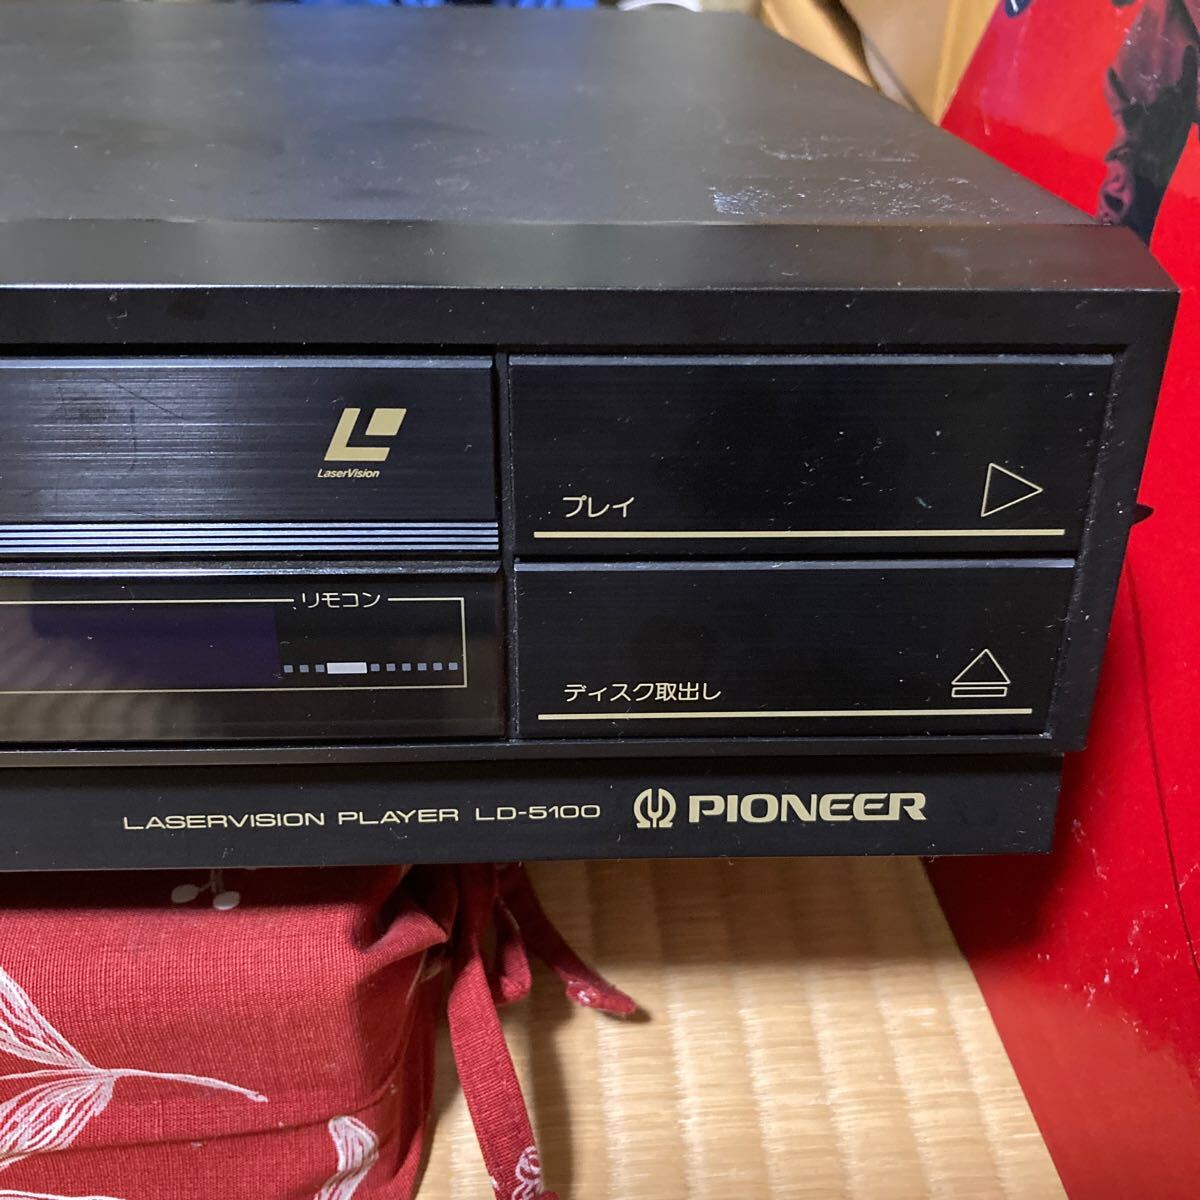 パイオニア レーザーディスクプレーヤー LD-5100 再生可能の画像4